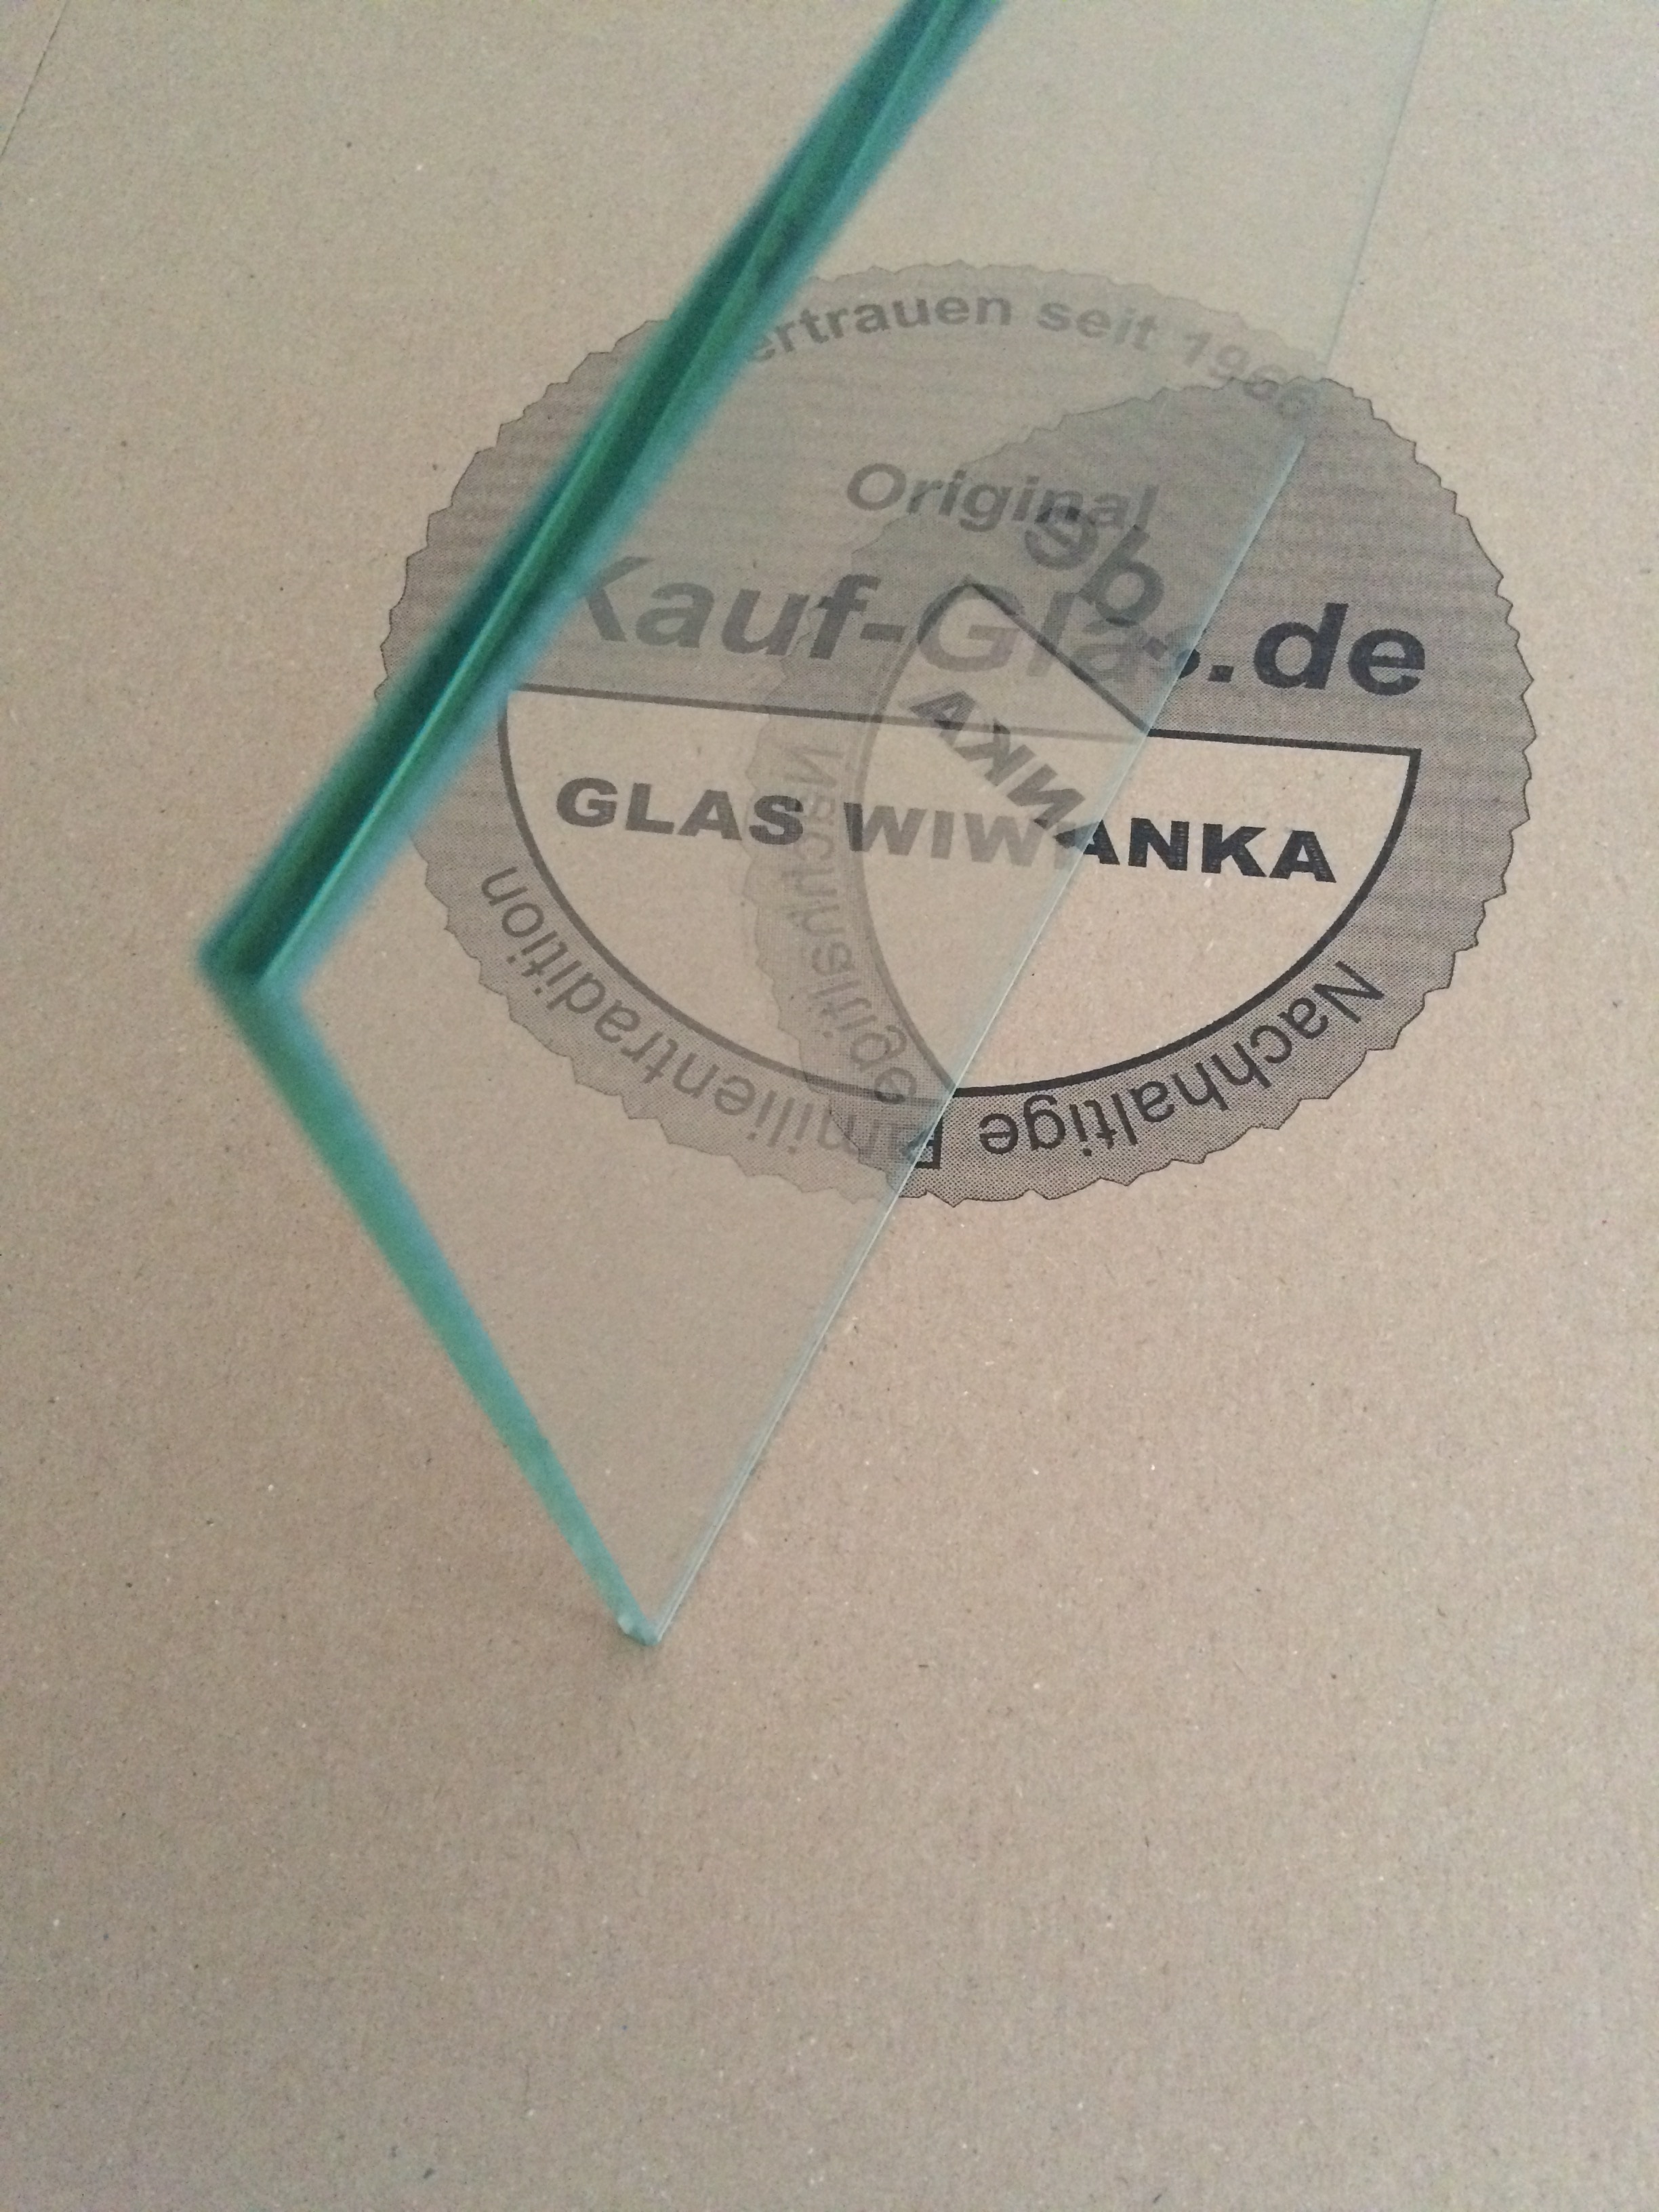 Kauf-Glas-Regalglas-2